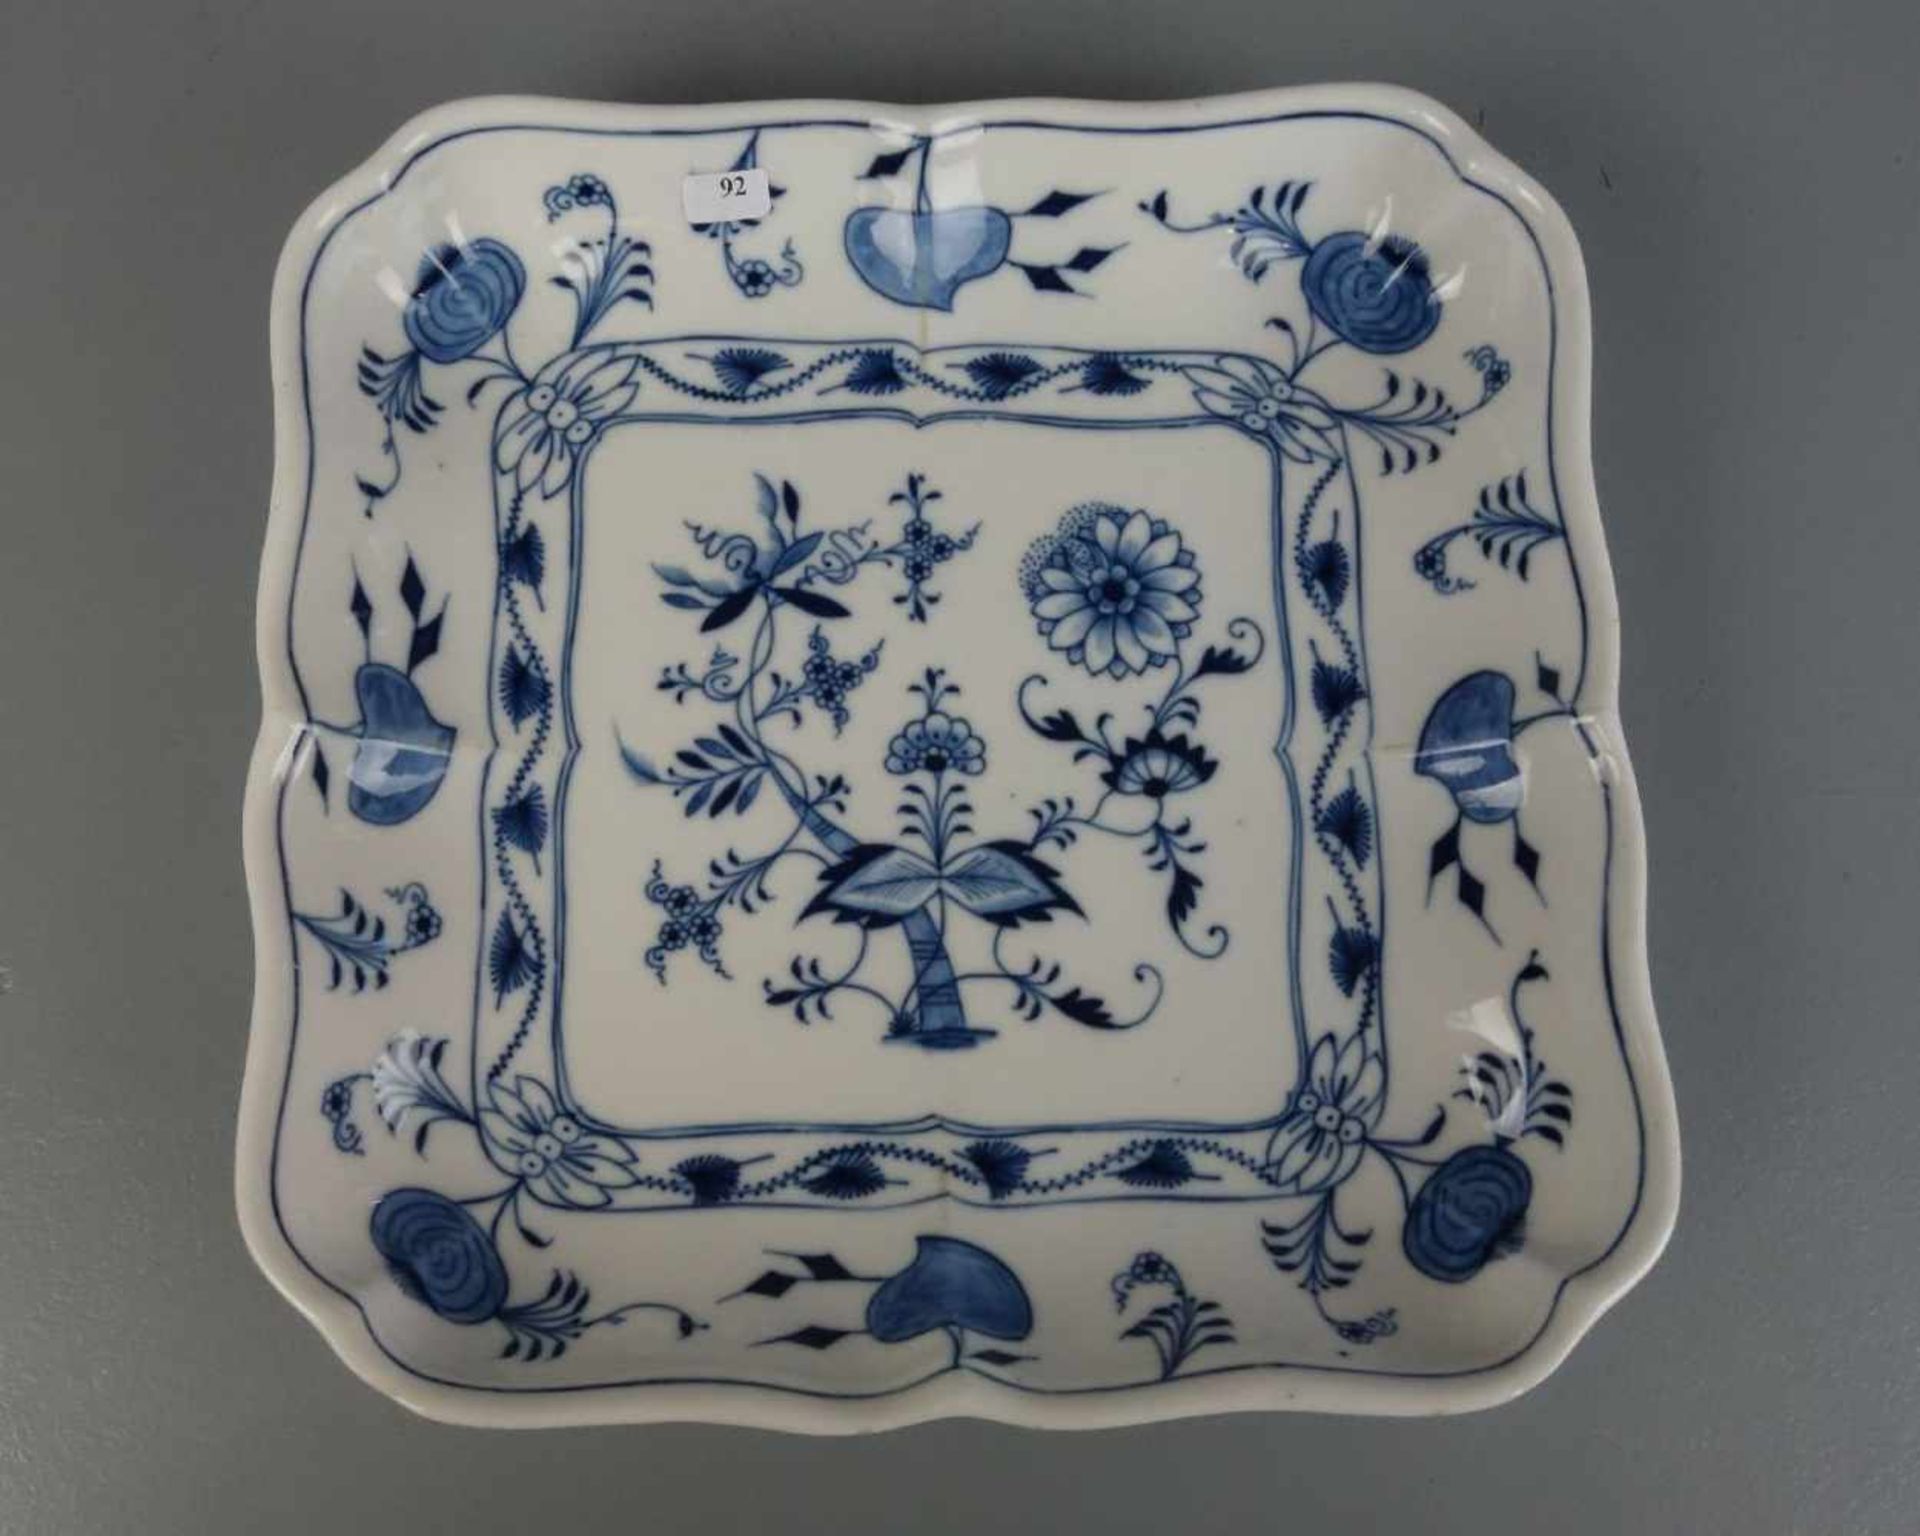 KARREESCHALE / bowl, Porzellan, Porzellanfabrik Ernst Teichert in Meißen, Marke 1901-1923, unter dem